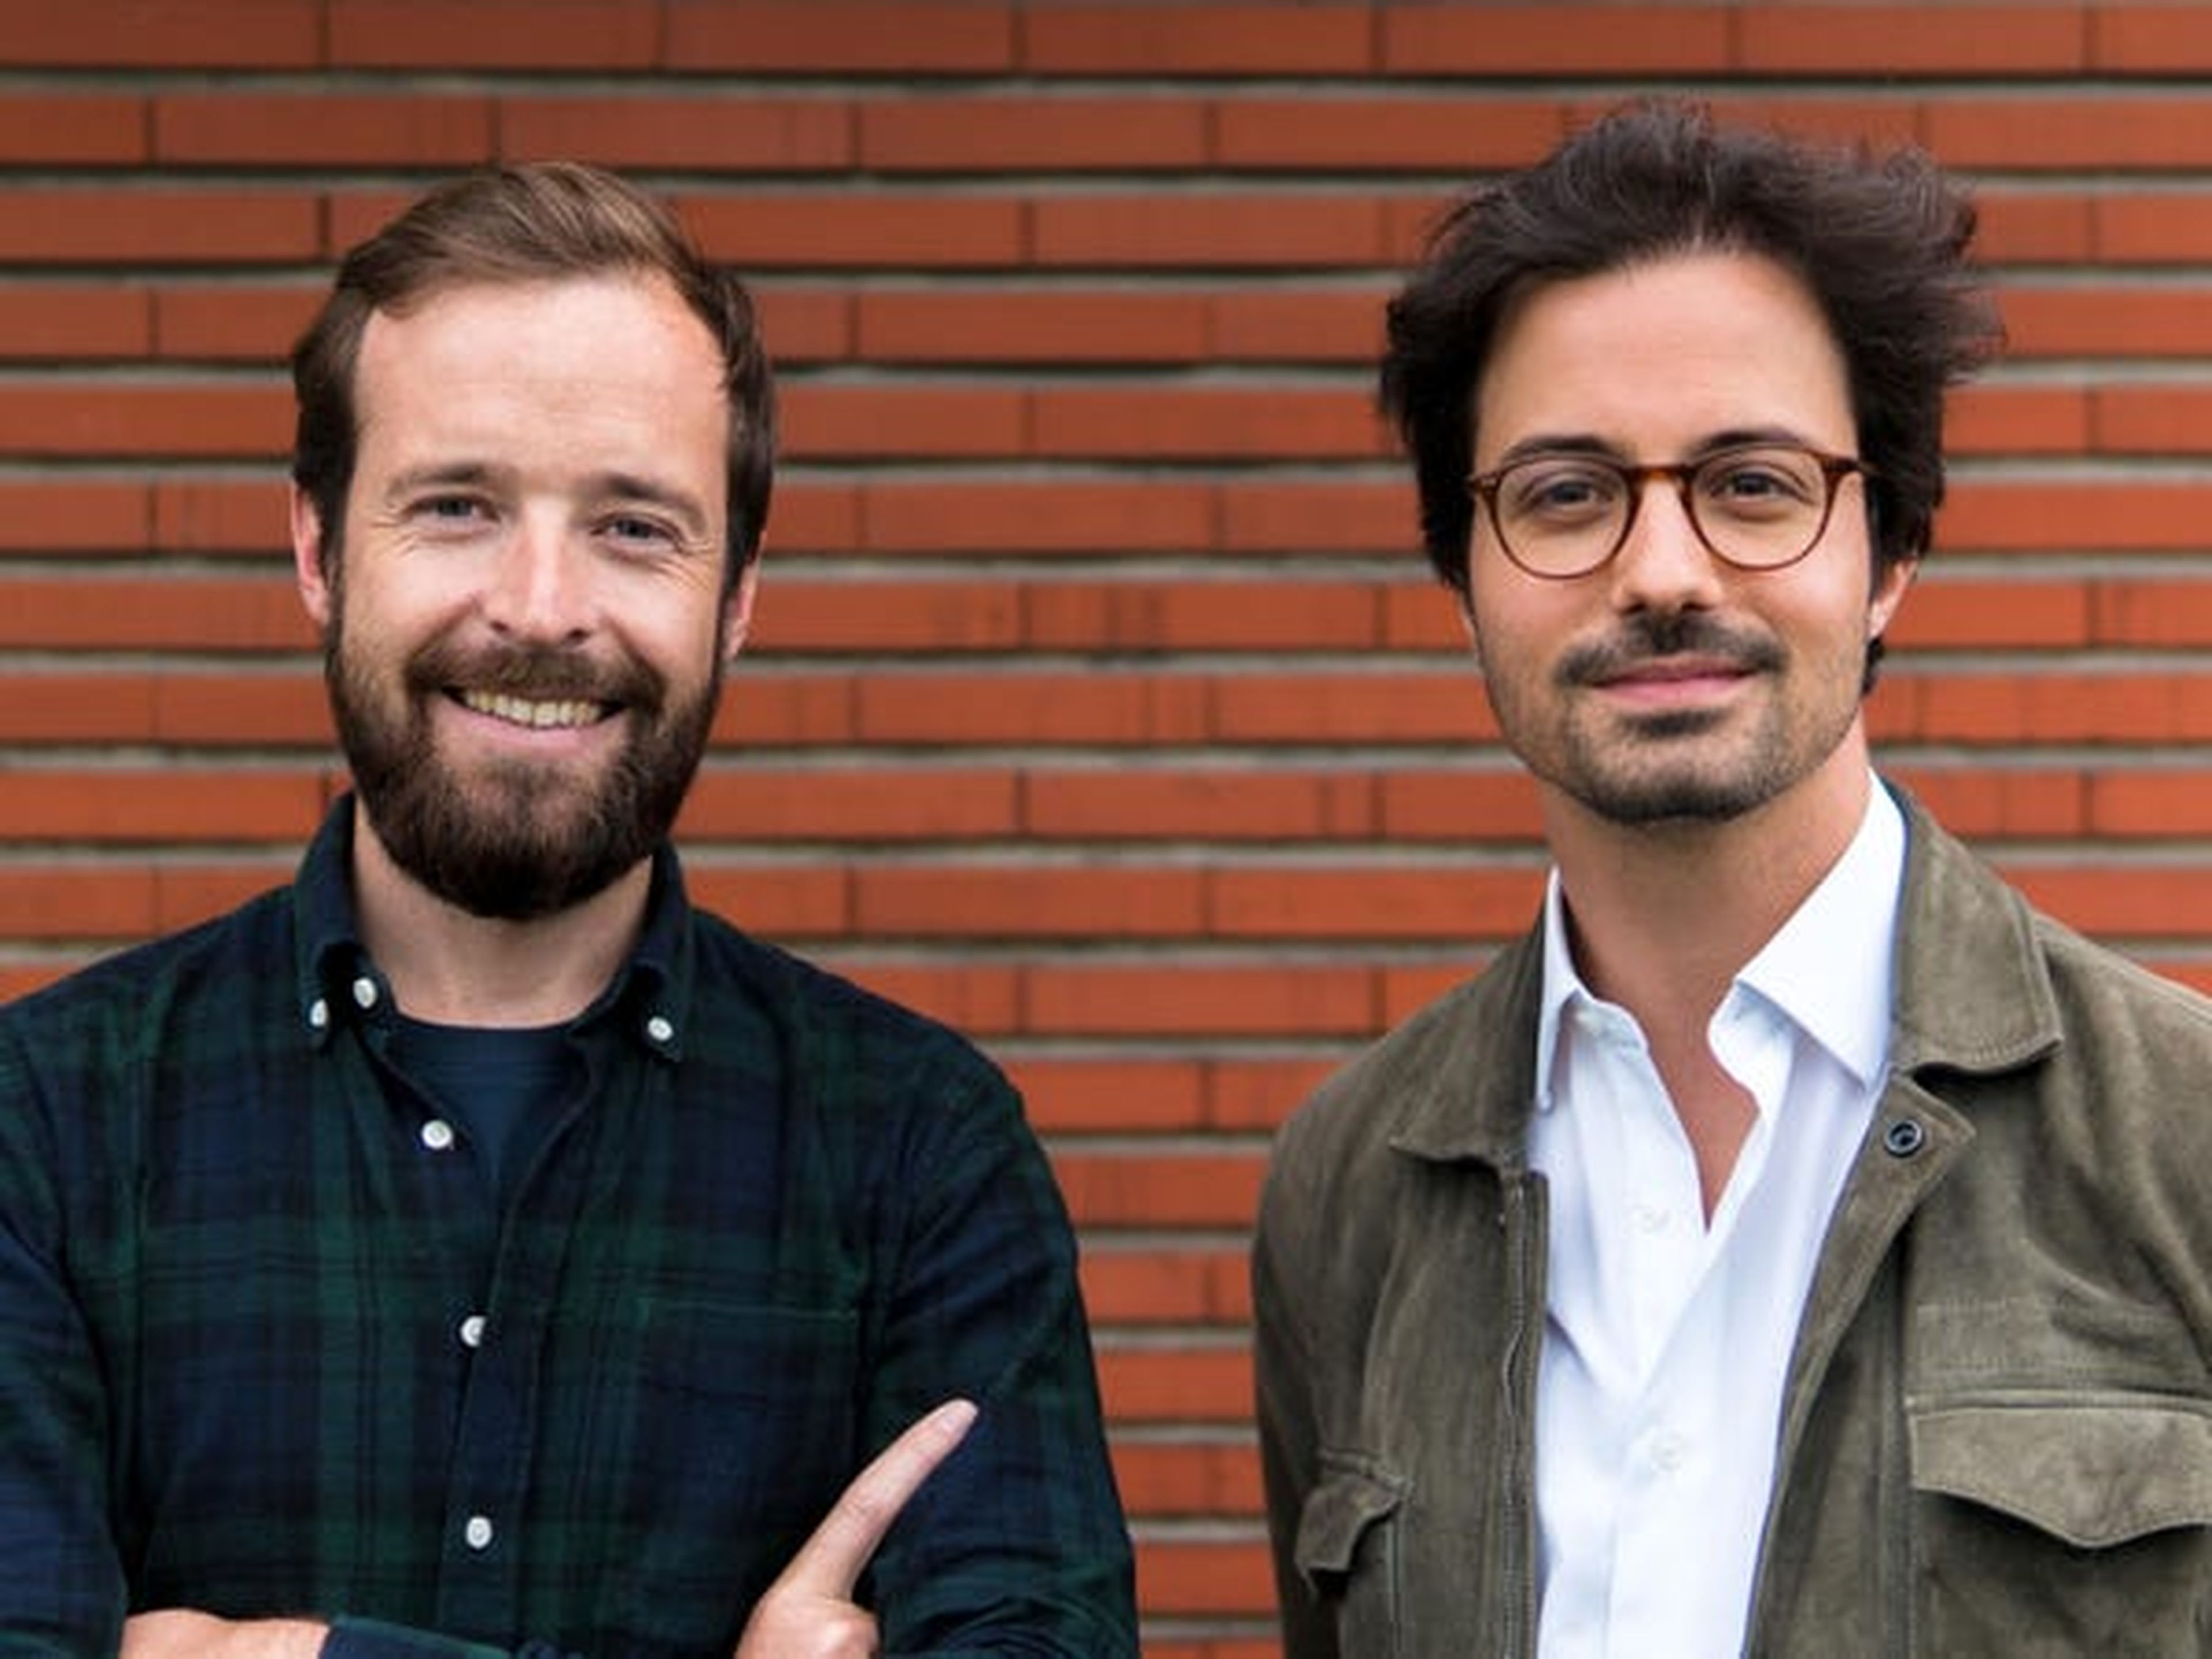 Los fundadores de Virtuo, Thibault Chassagne (izq.) y Karim Kaddoura.